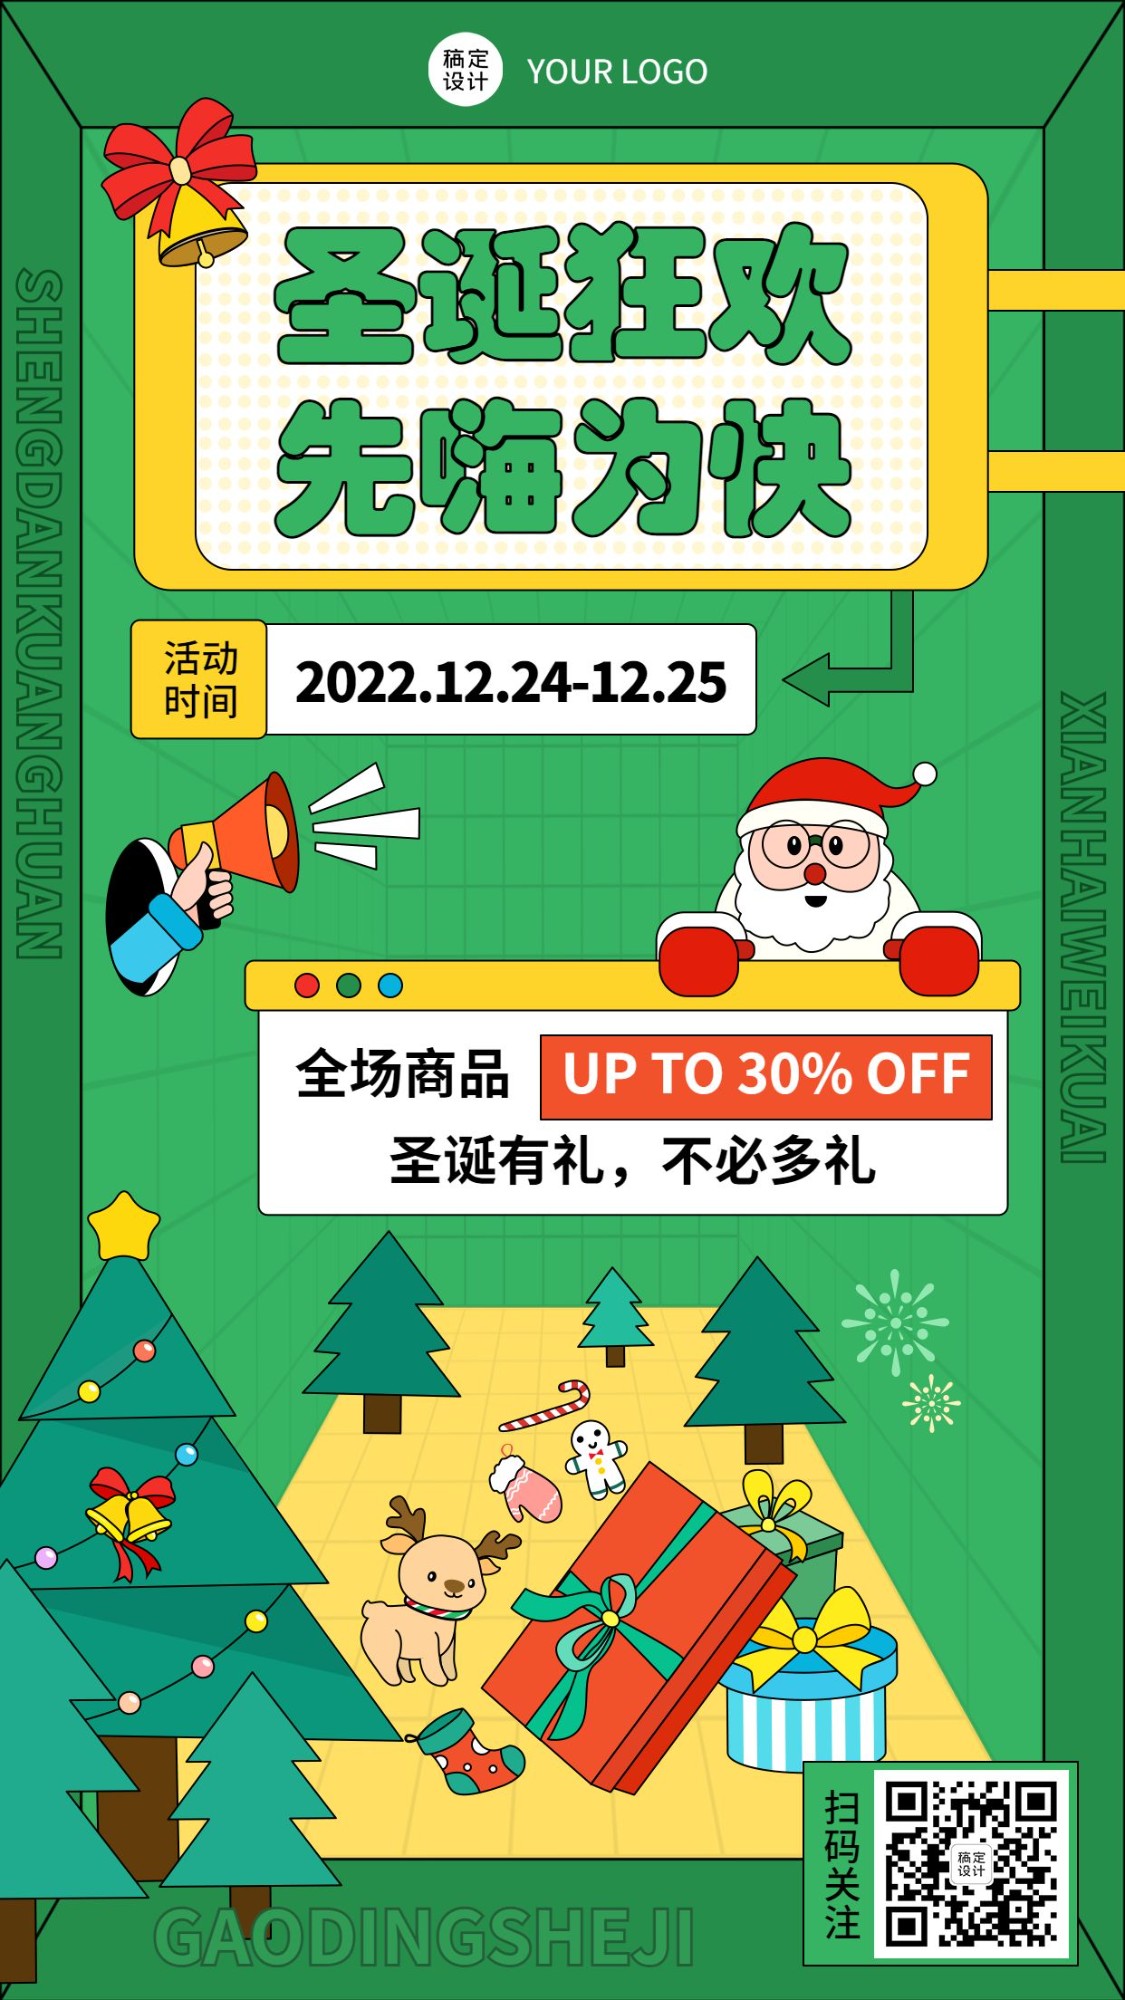 圣诞节活动促销插画手机海报预览效果